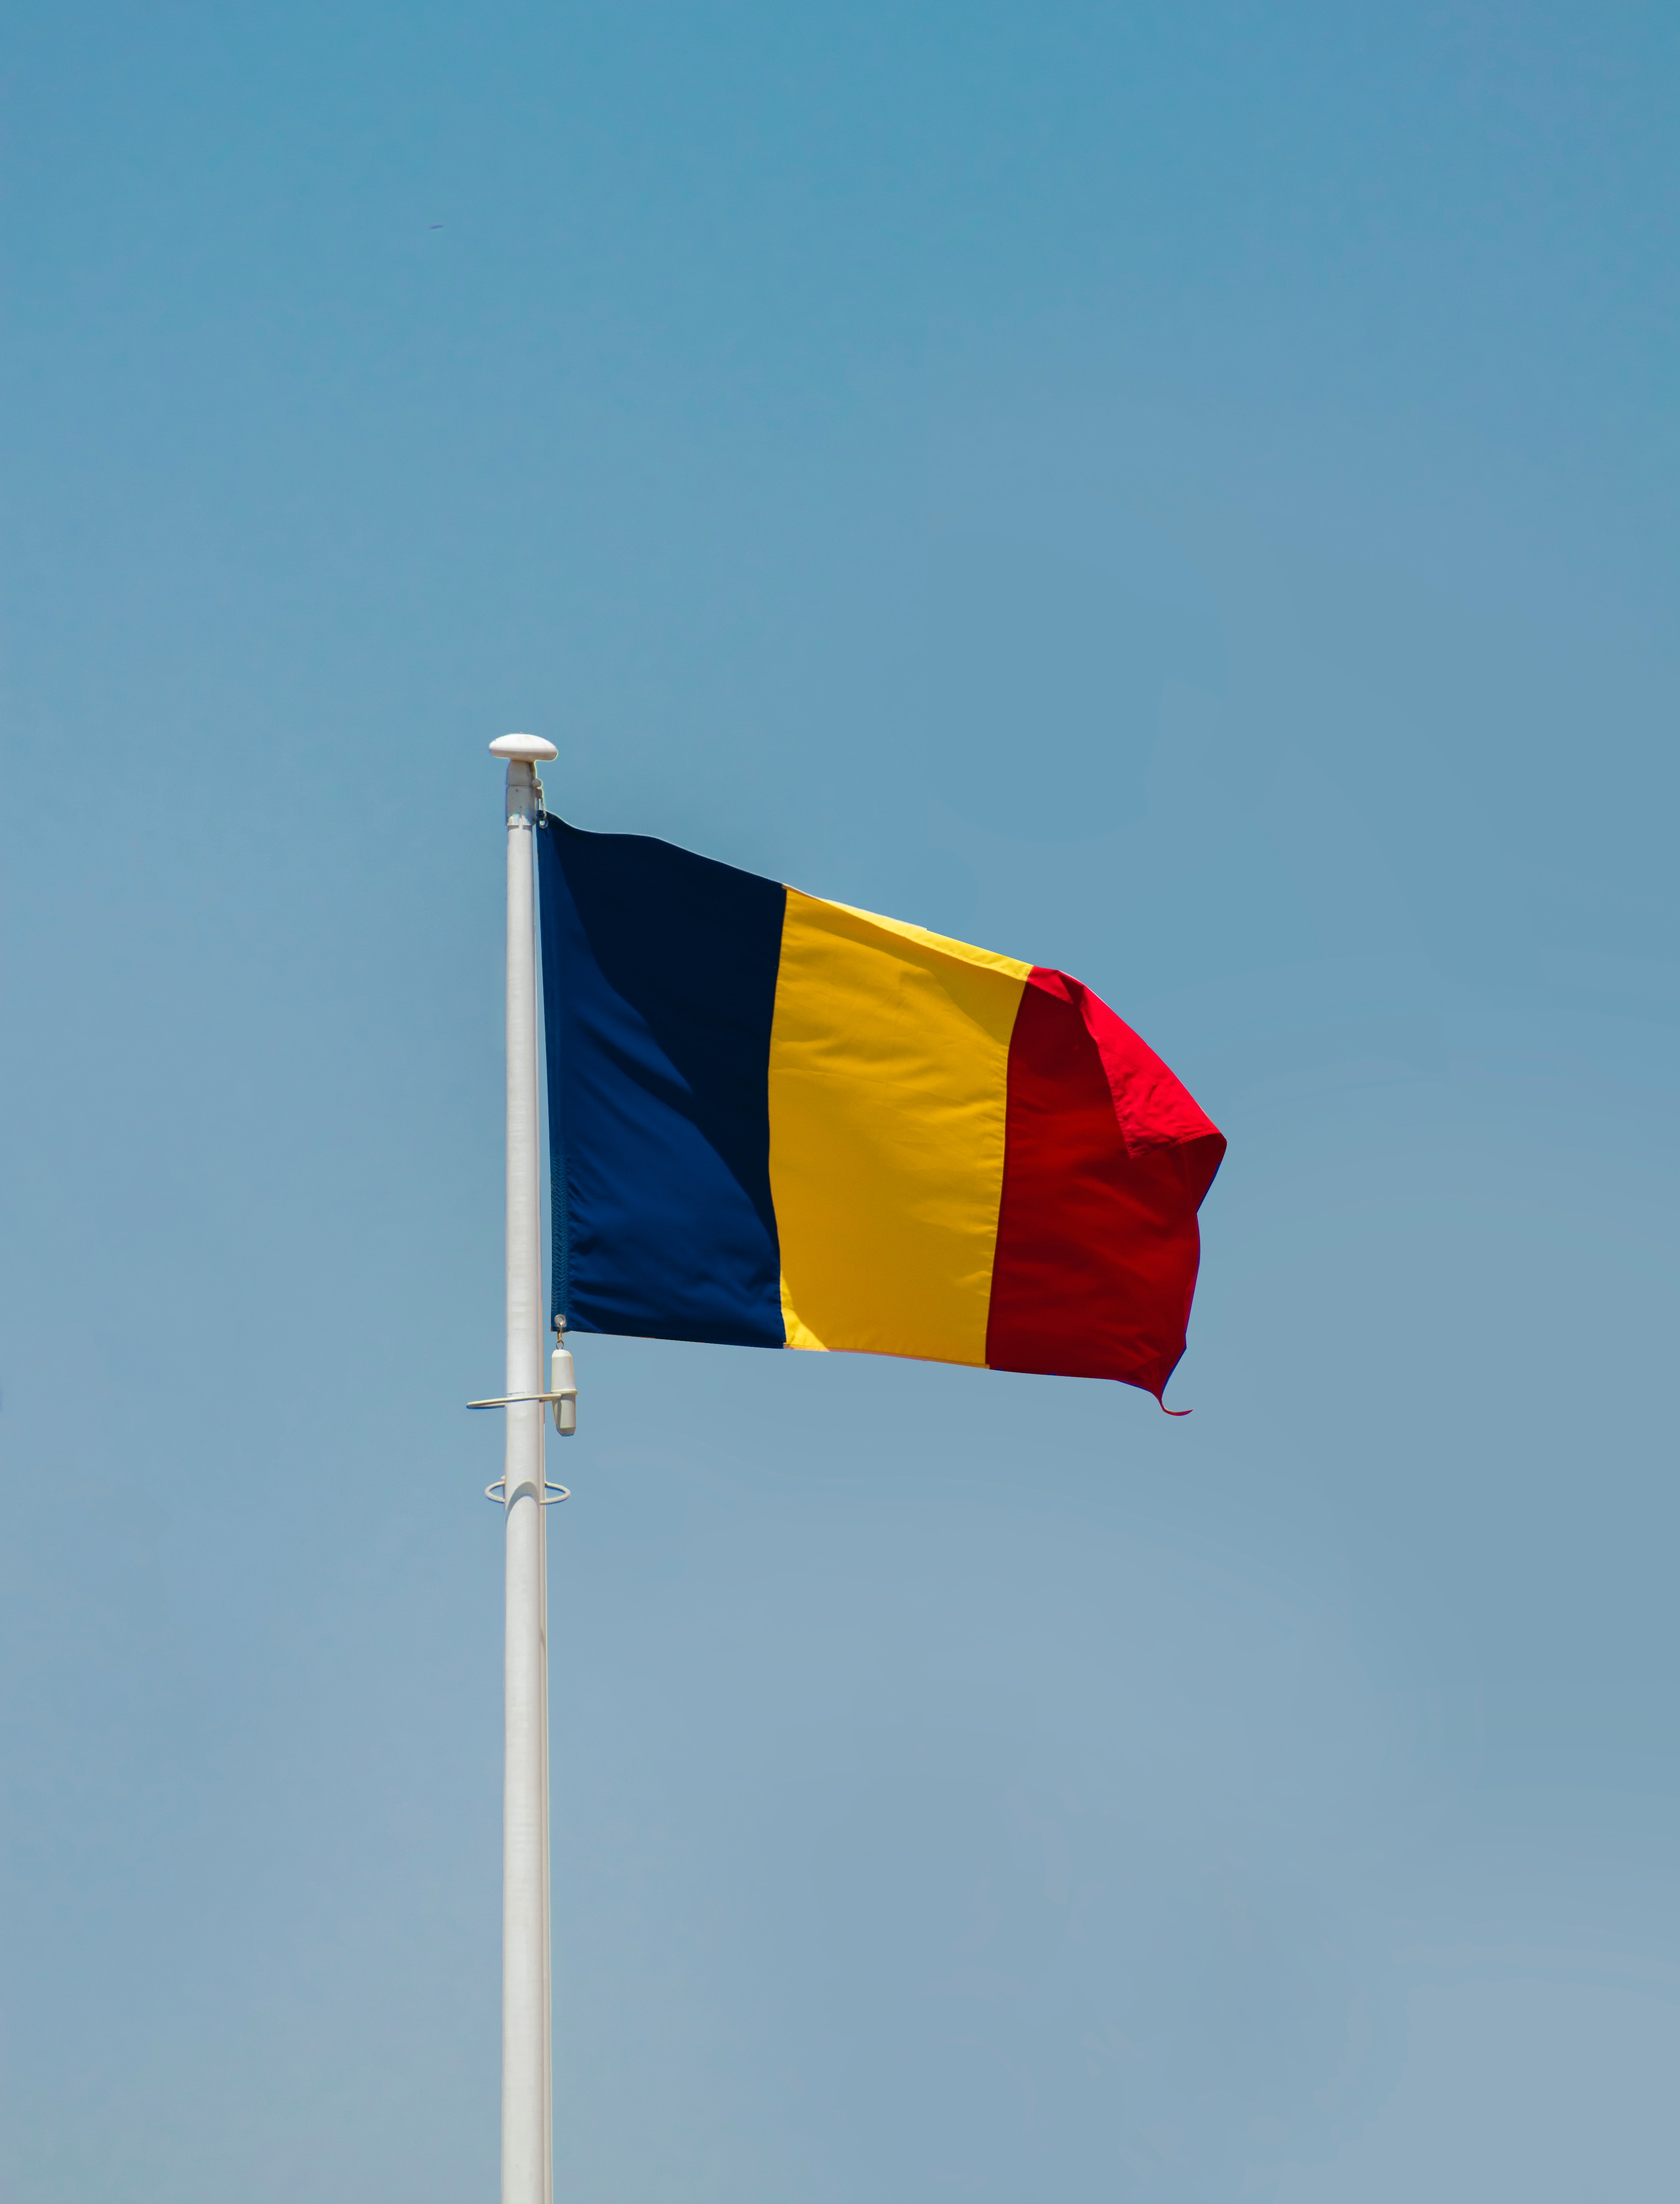 The flag of romania on a flag pole